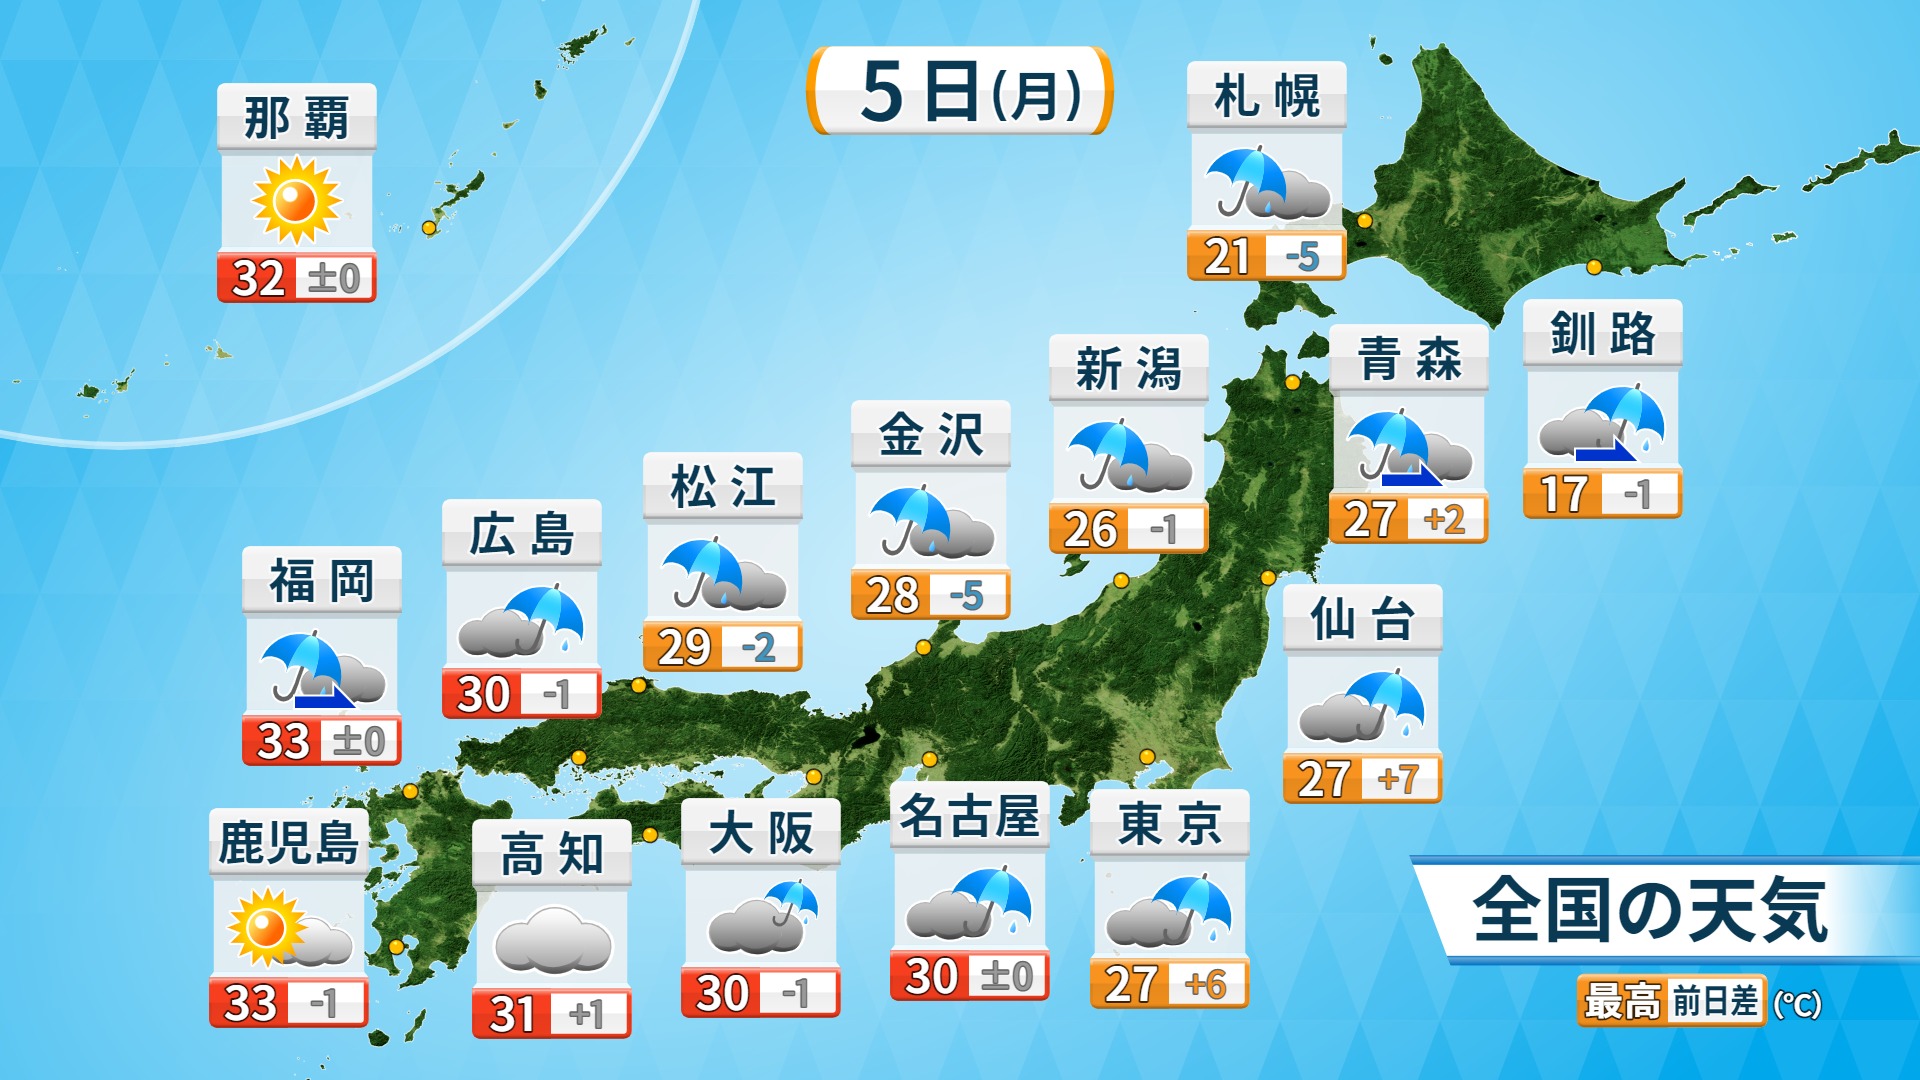 福岡良子official Site 天気のポイント 21年7月6日 火 日本海側で雨強まる